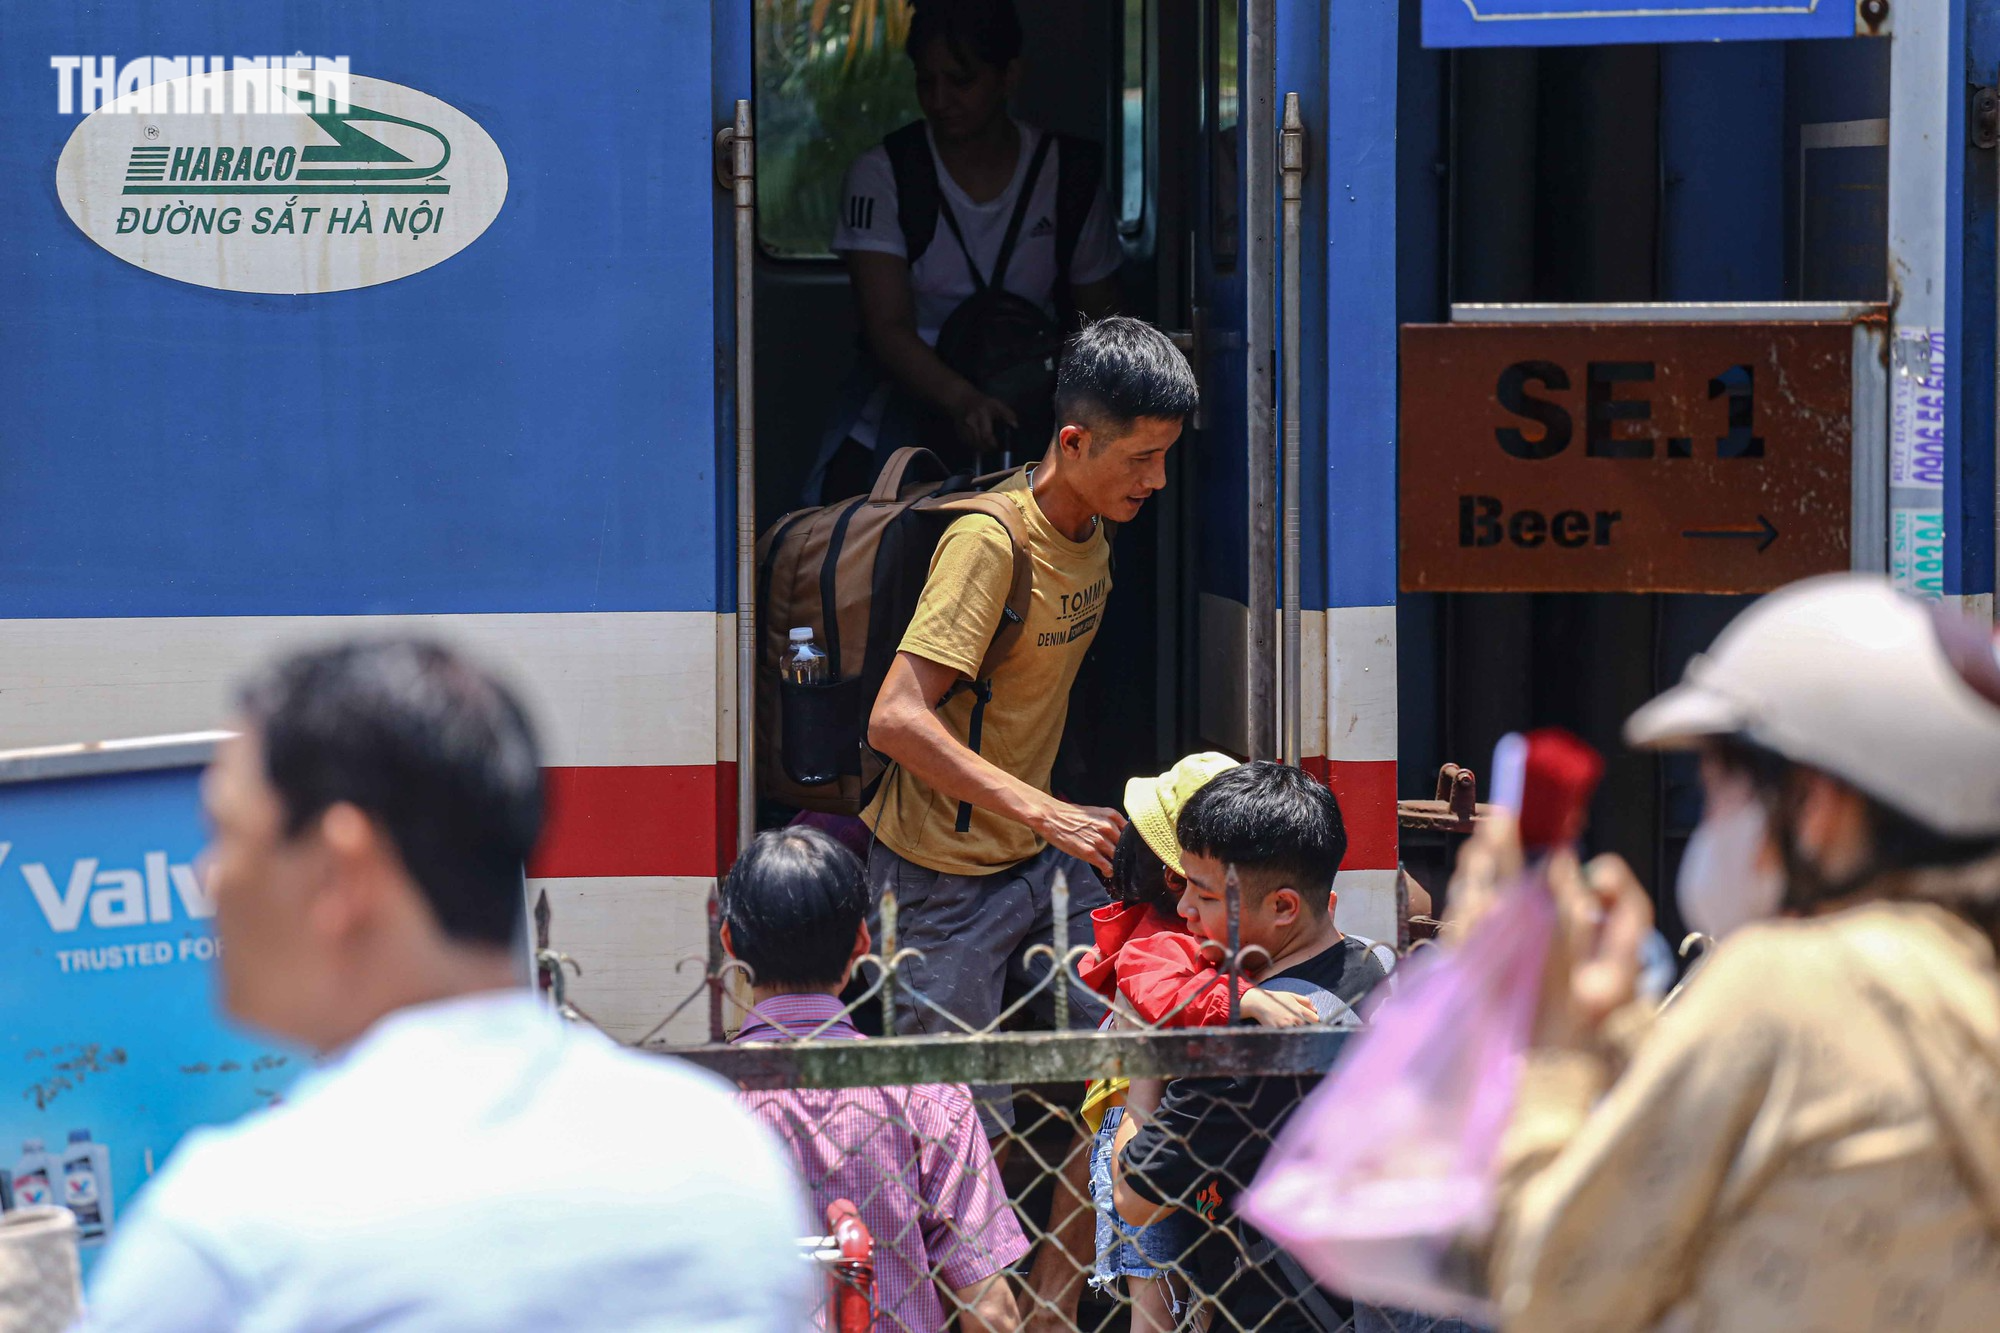 Tàu SE1 trật bánh khỏi đường ray tại Huế, hàng trăm hành khách hoảng loạn - Ảnh 7.